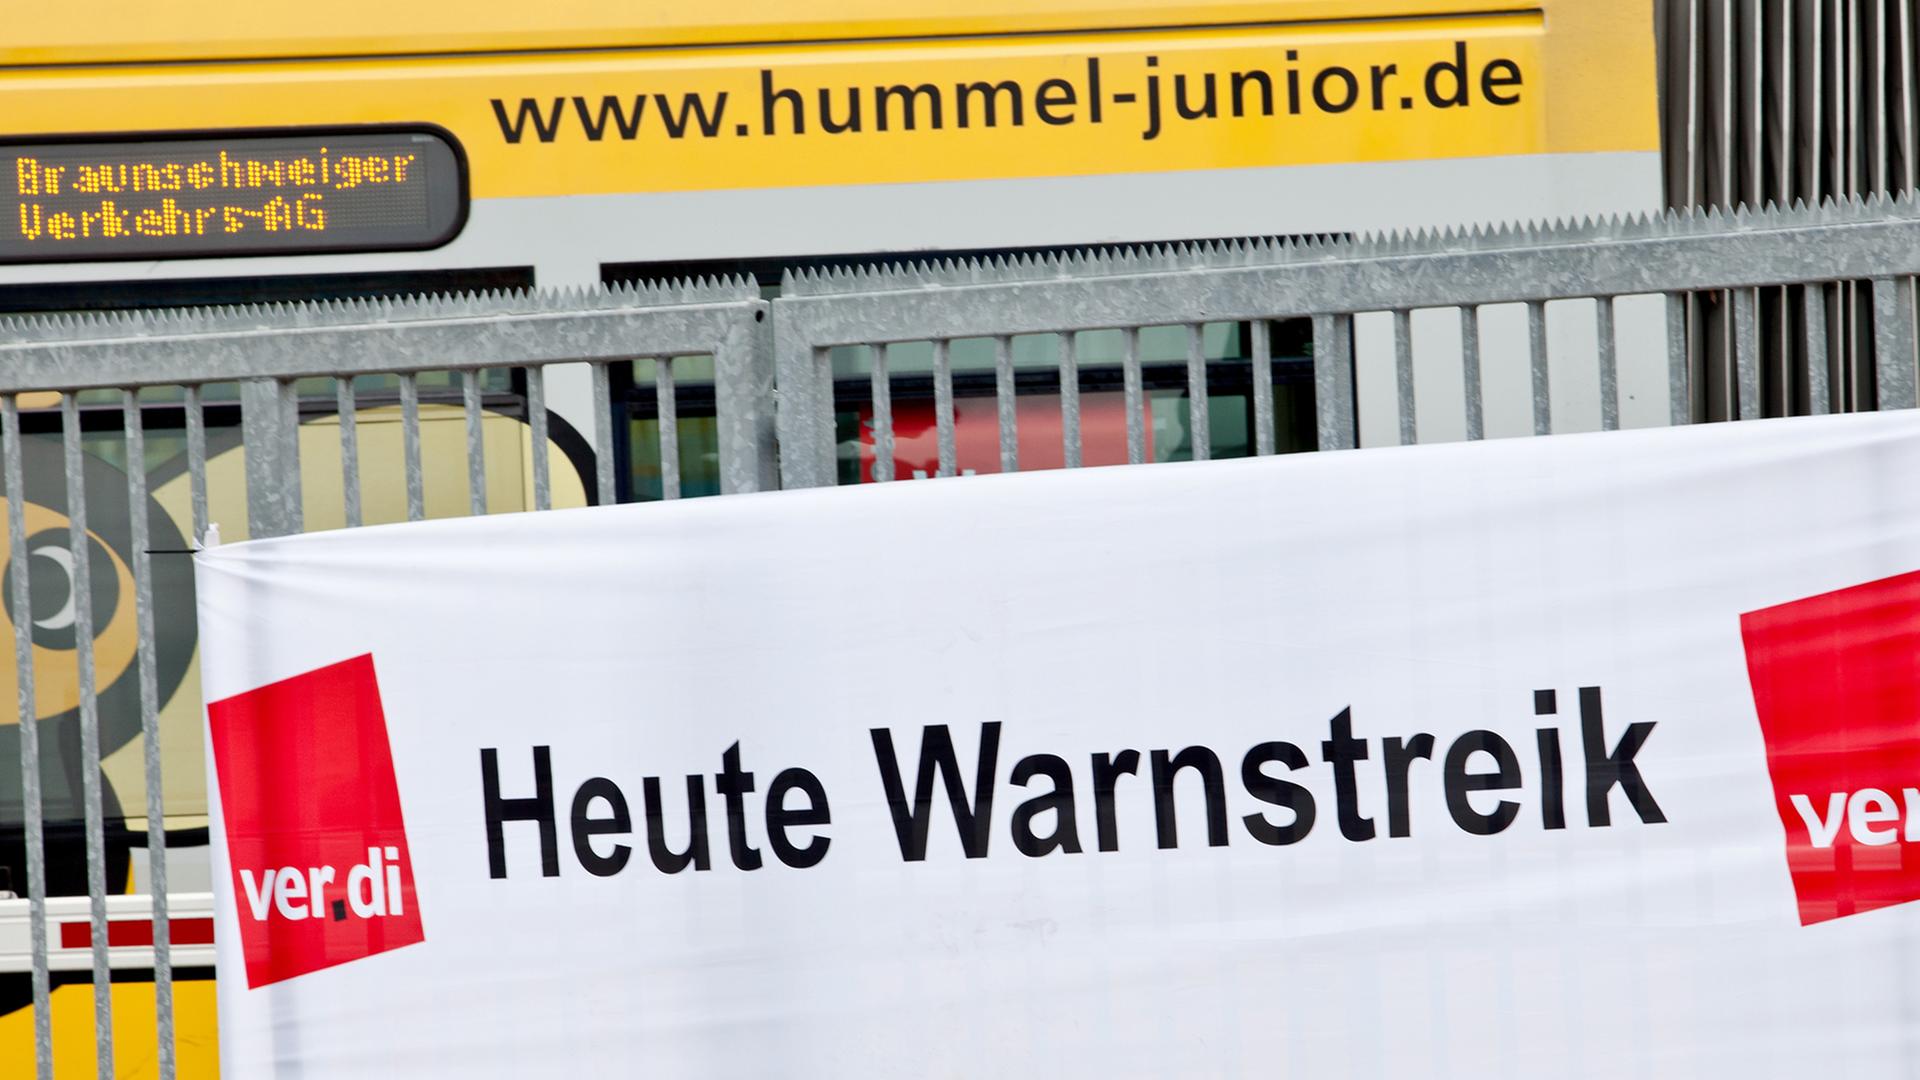 Auf dem Betriebsgelände der Braunschweiger Verkehrs-AG hängt ein Verdi-Banner mit der Aufschrift "Heute Warnstreik"